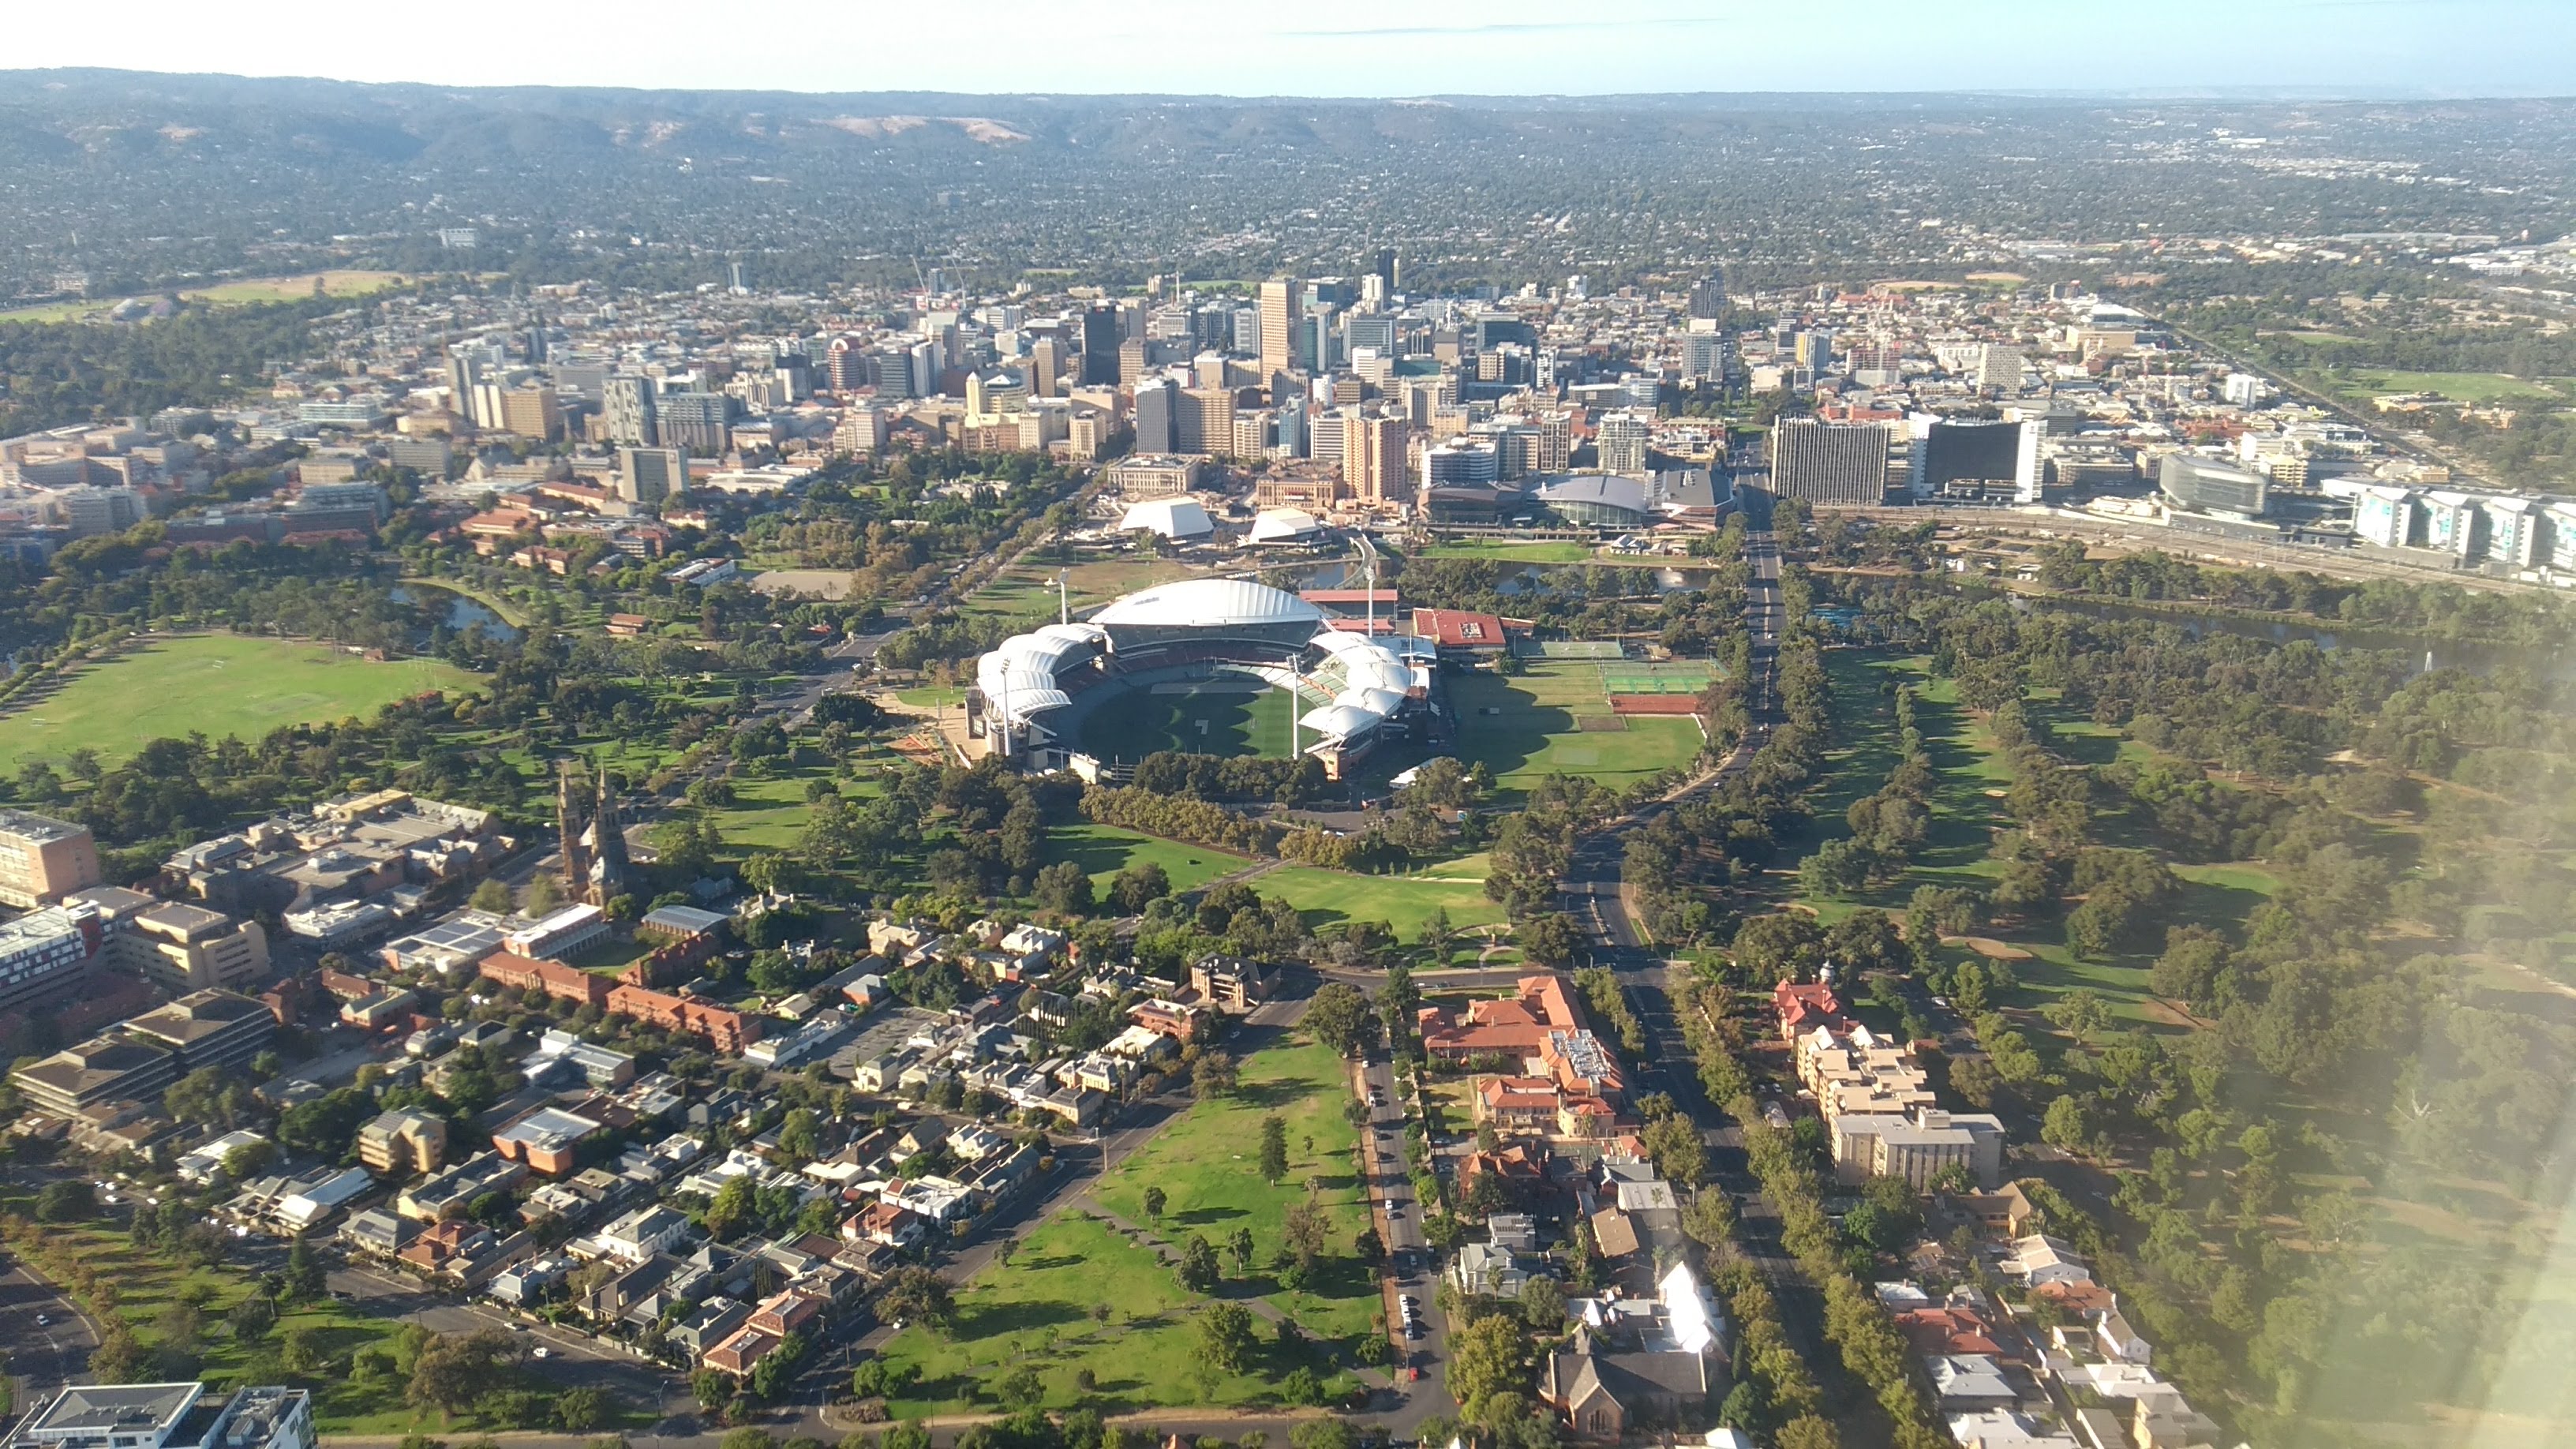 Adelaide città: stadio e grattacieli del centro